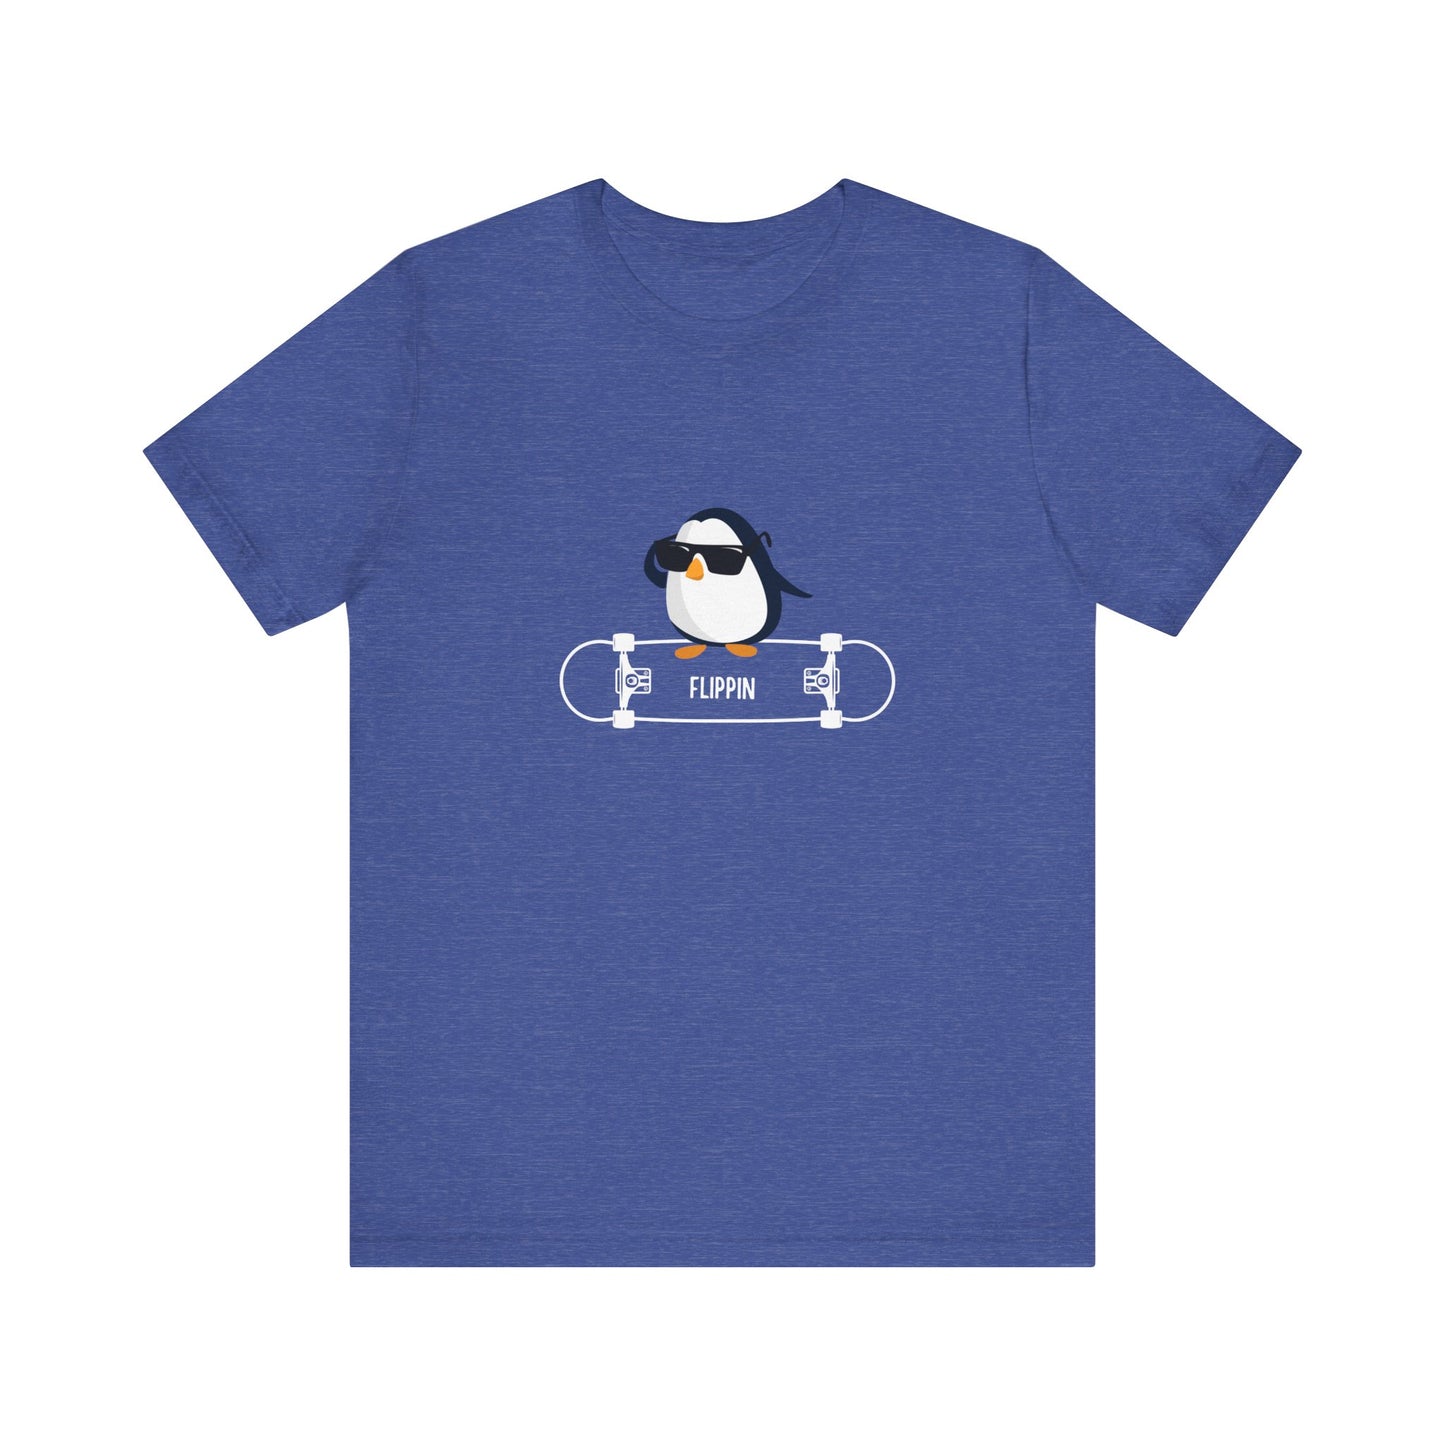 Adélie The Flippin Penguin. Unisex Jersey Short Sleeve Tee